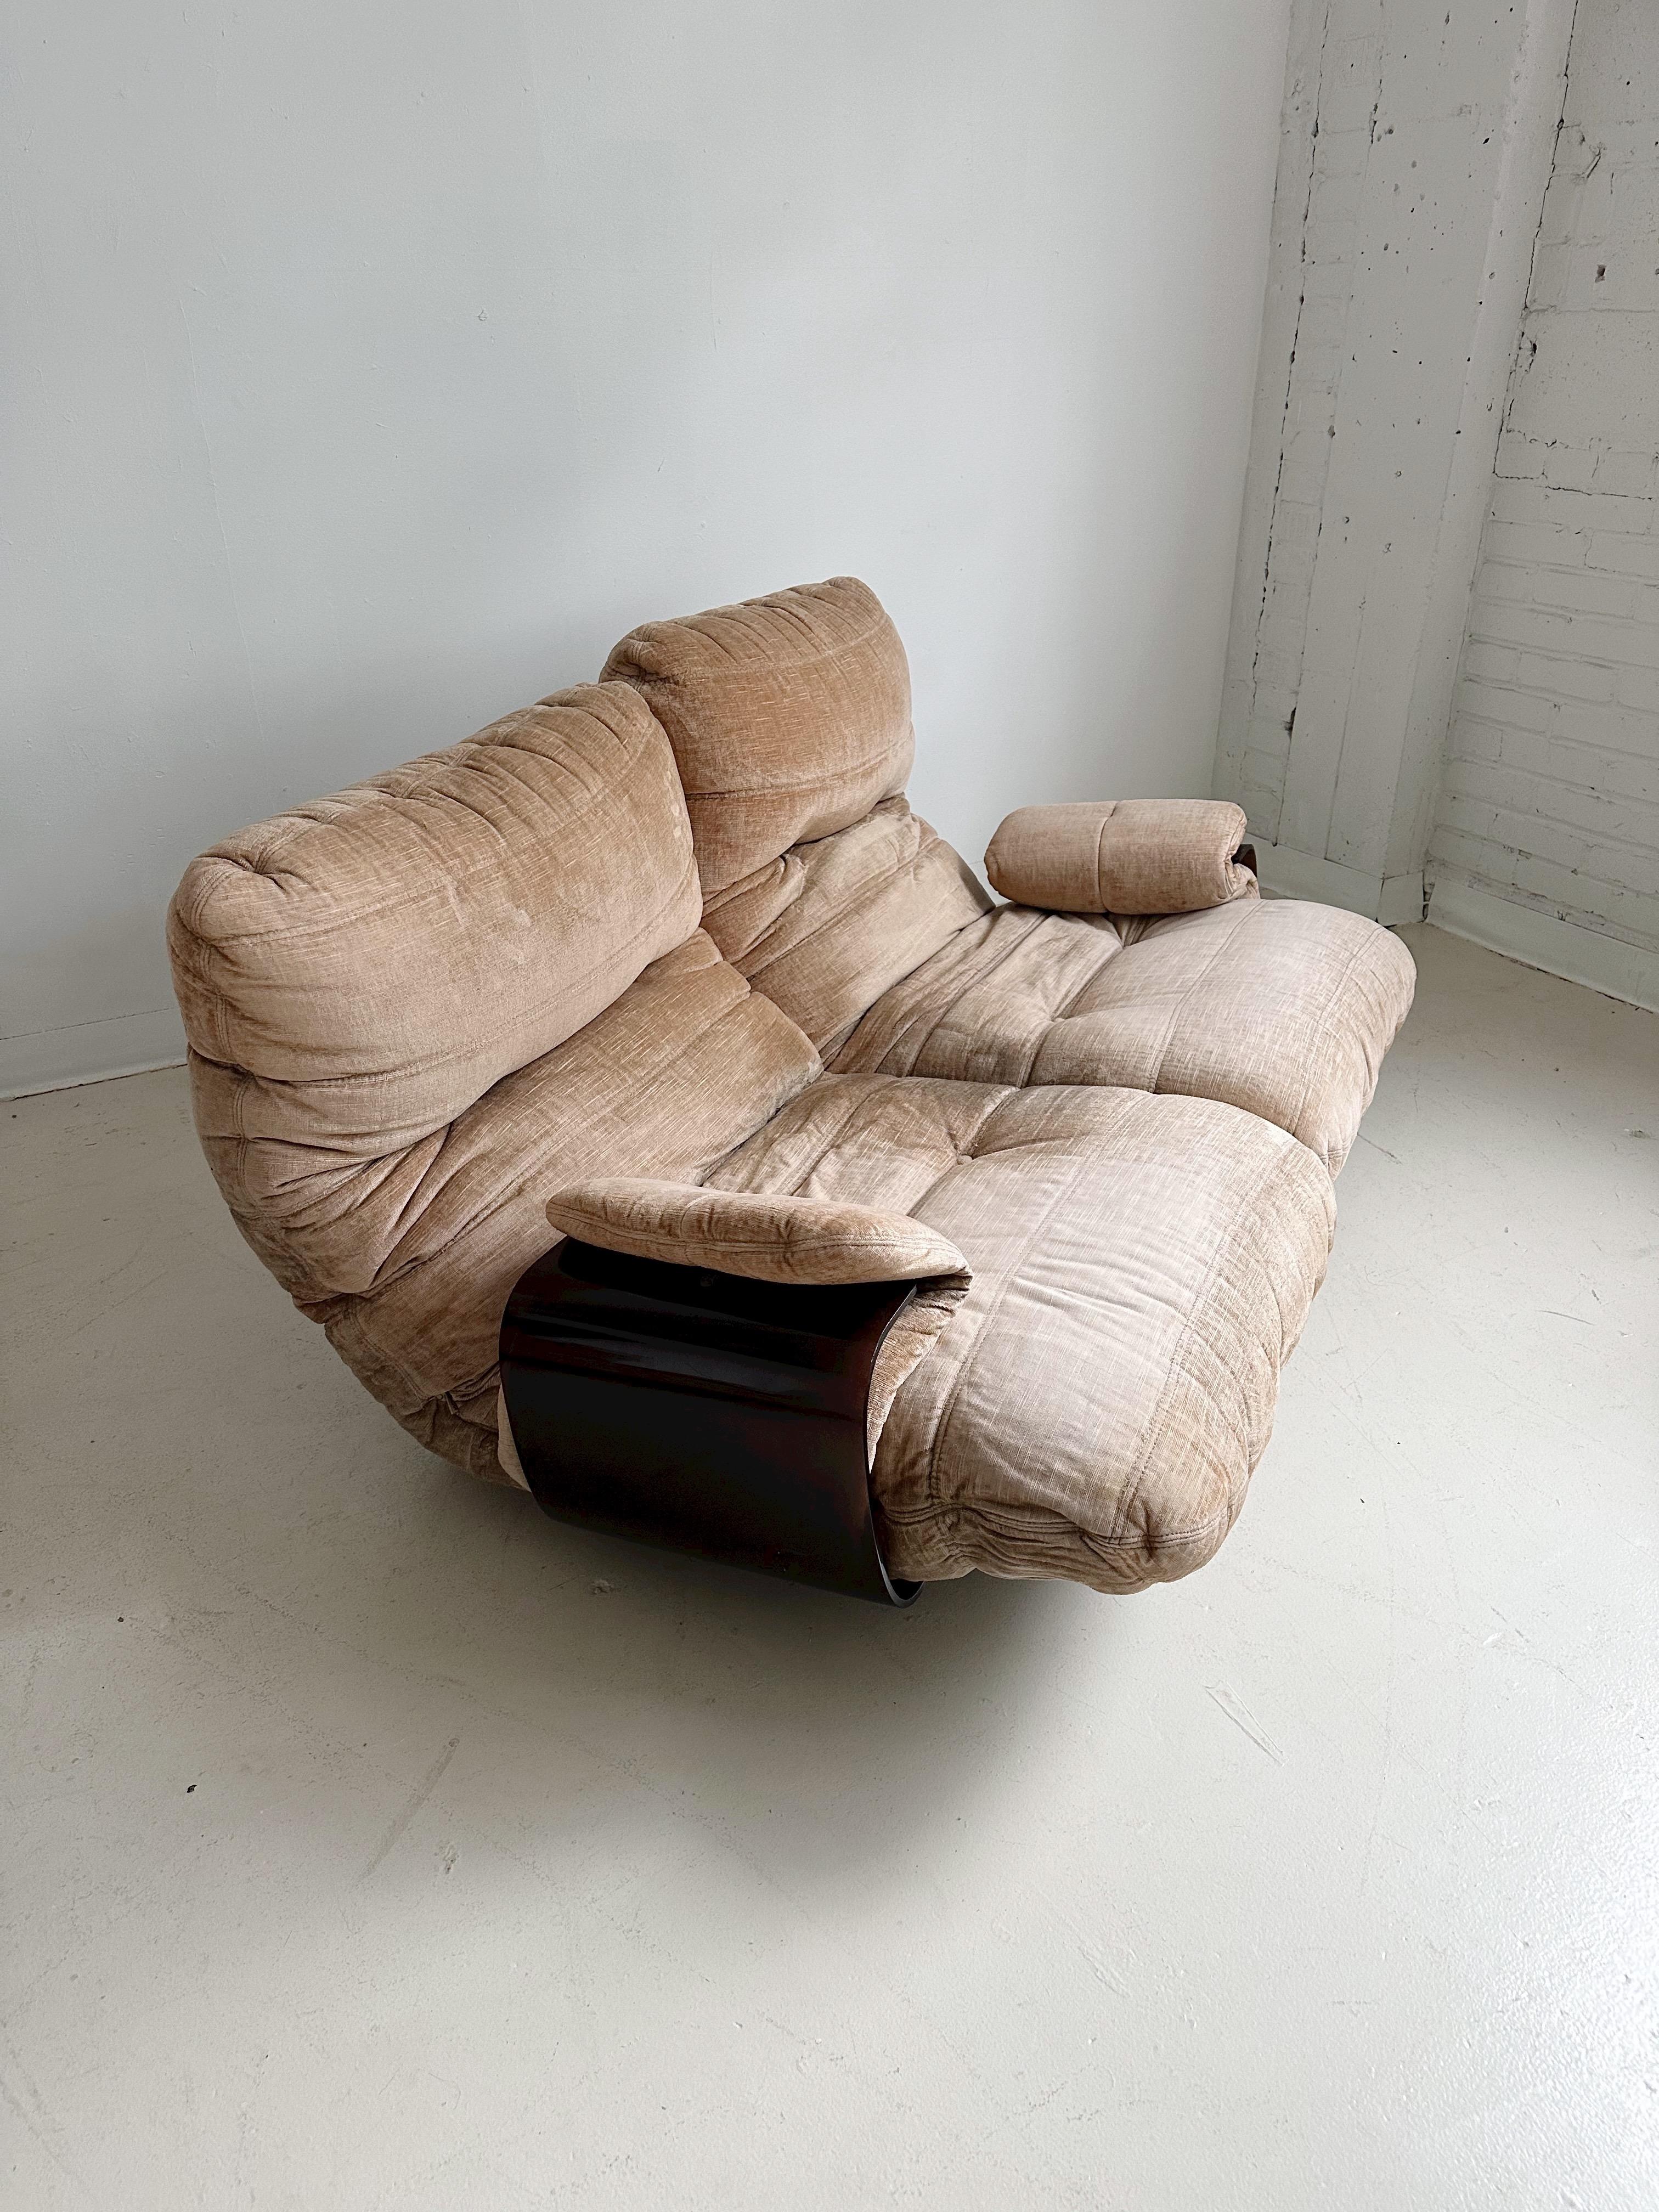 Marsala 2-Sitzer Sofa von Michel Ducaroy für Ligne Roset, 70er Jahre

Mit dunkelbraunem Plexiglasfuß und hellbraunen Kissen.

//

Abmessungen:
54 